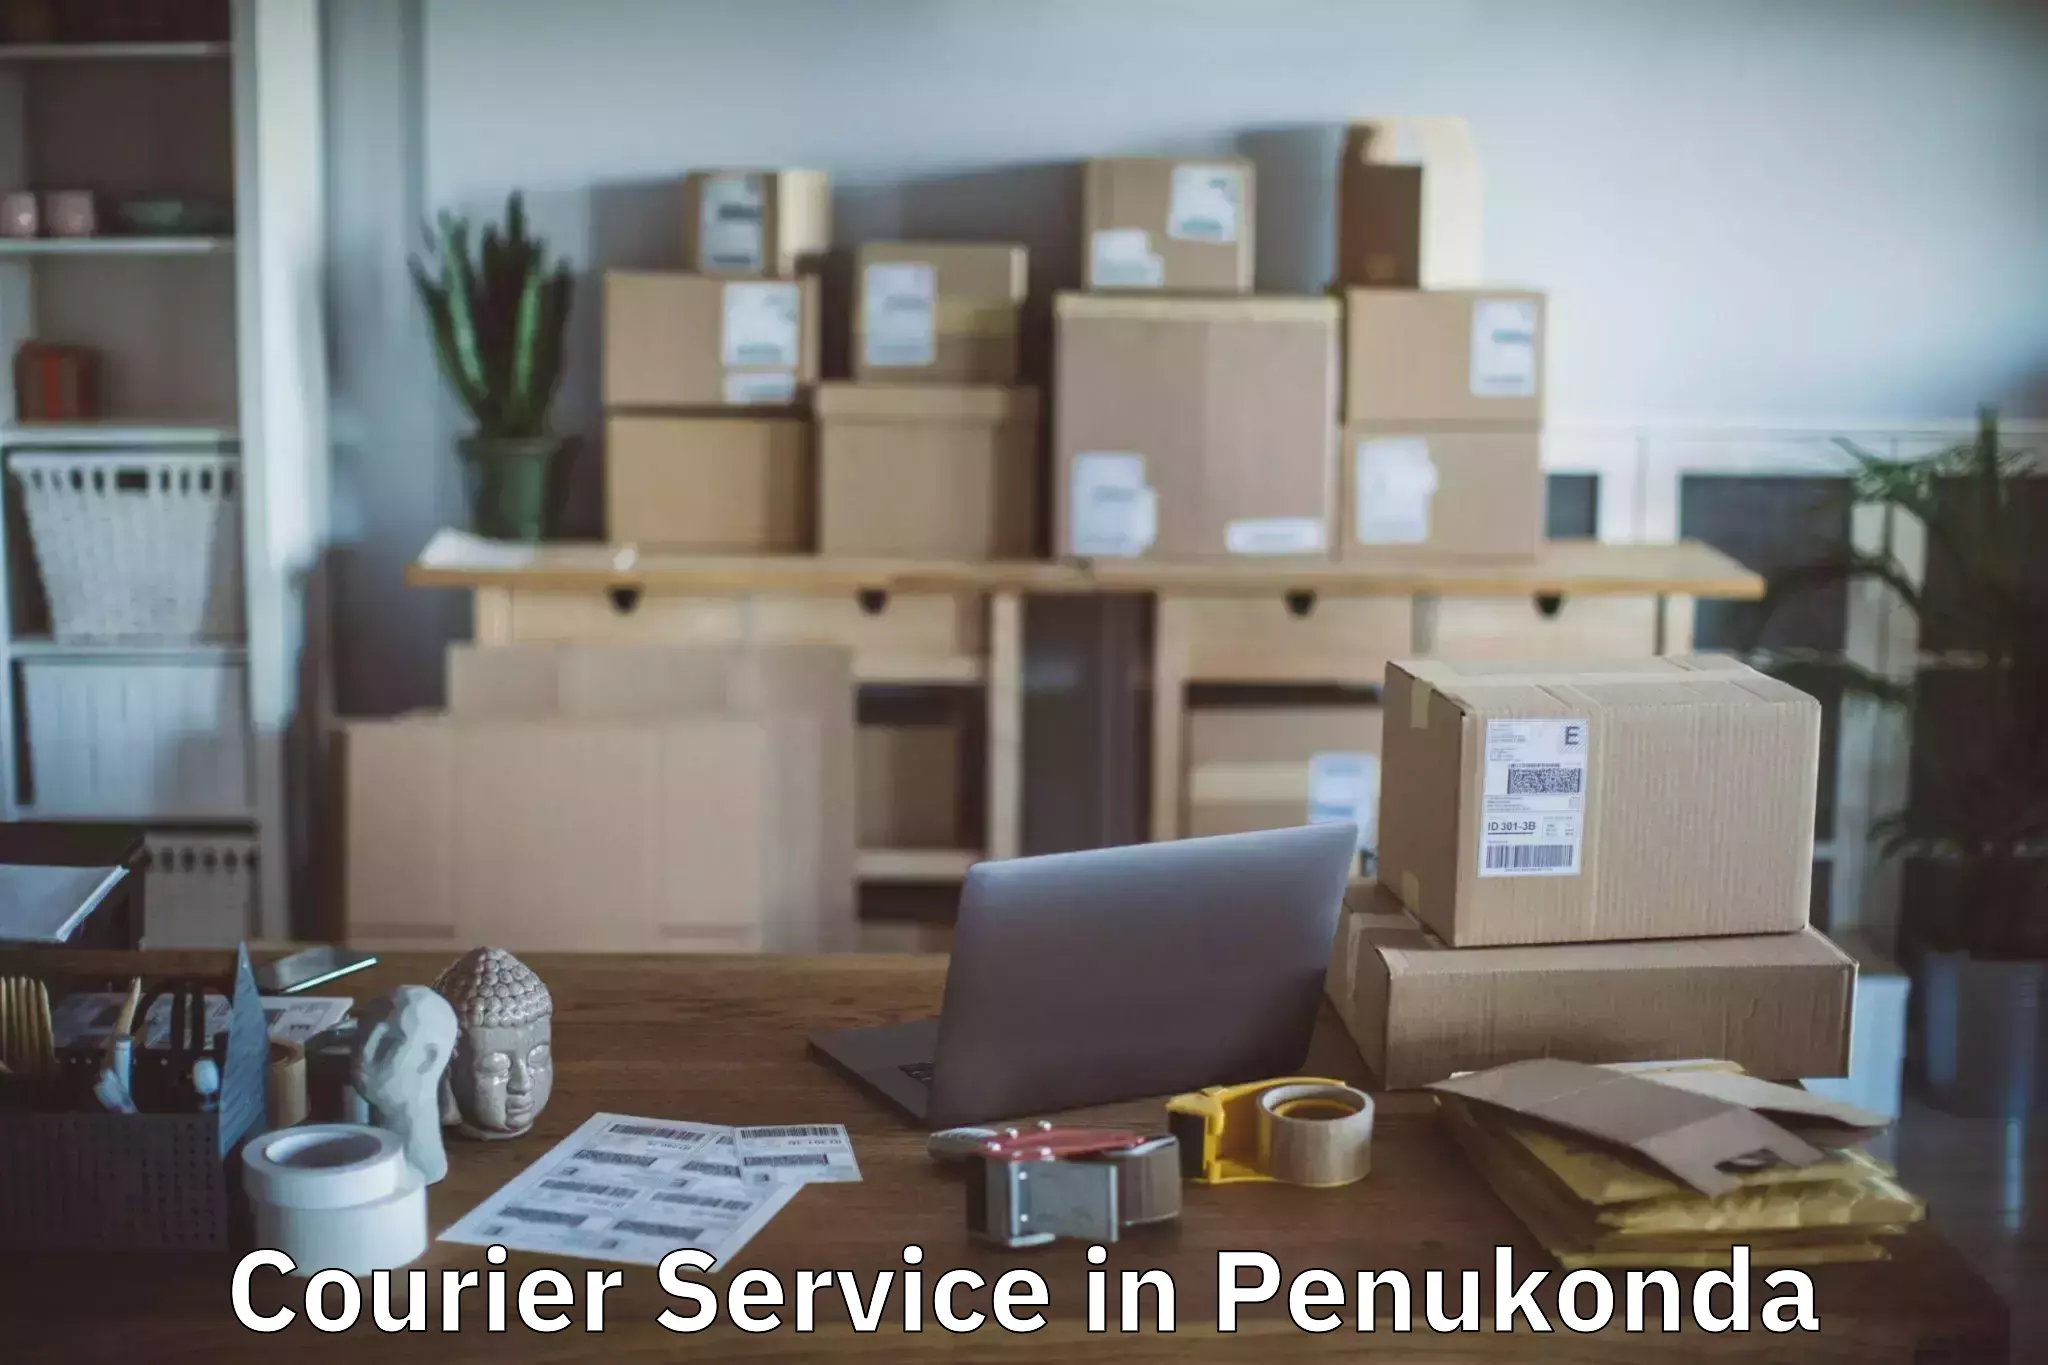 High-priority parcel service in Penukonda